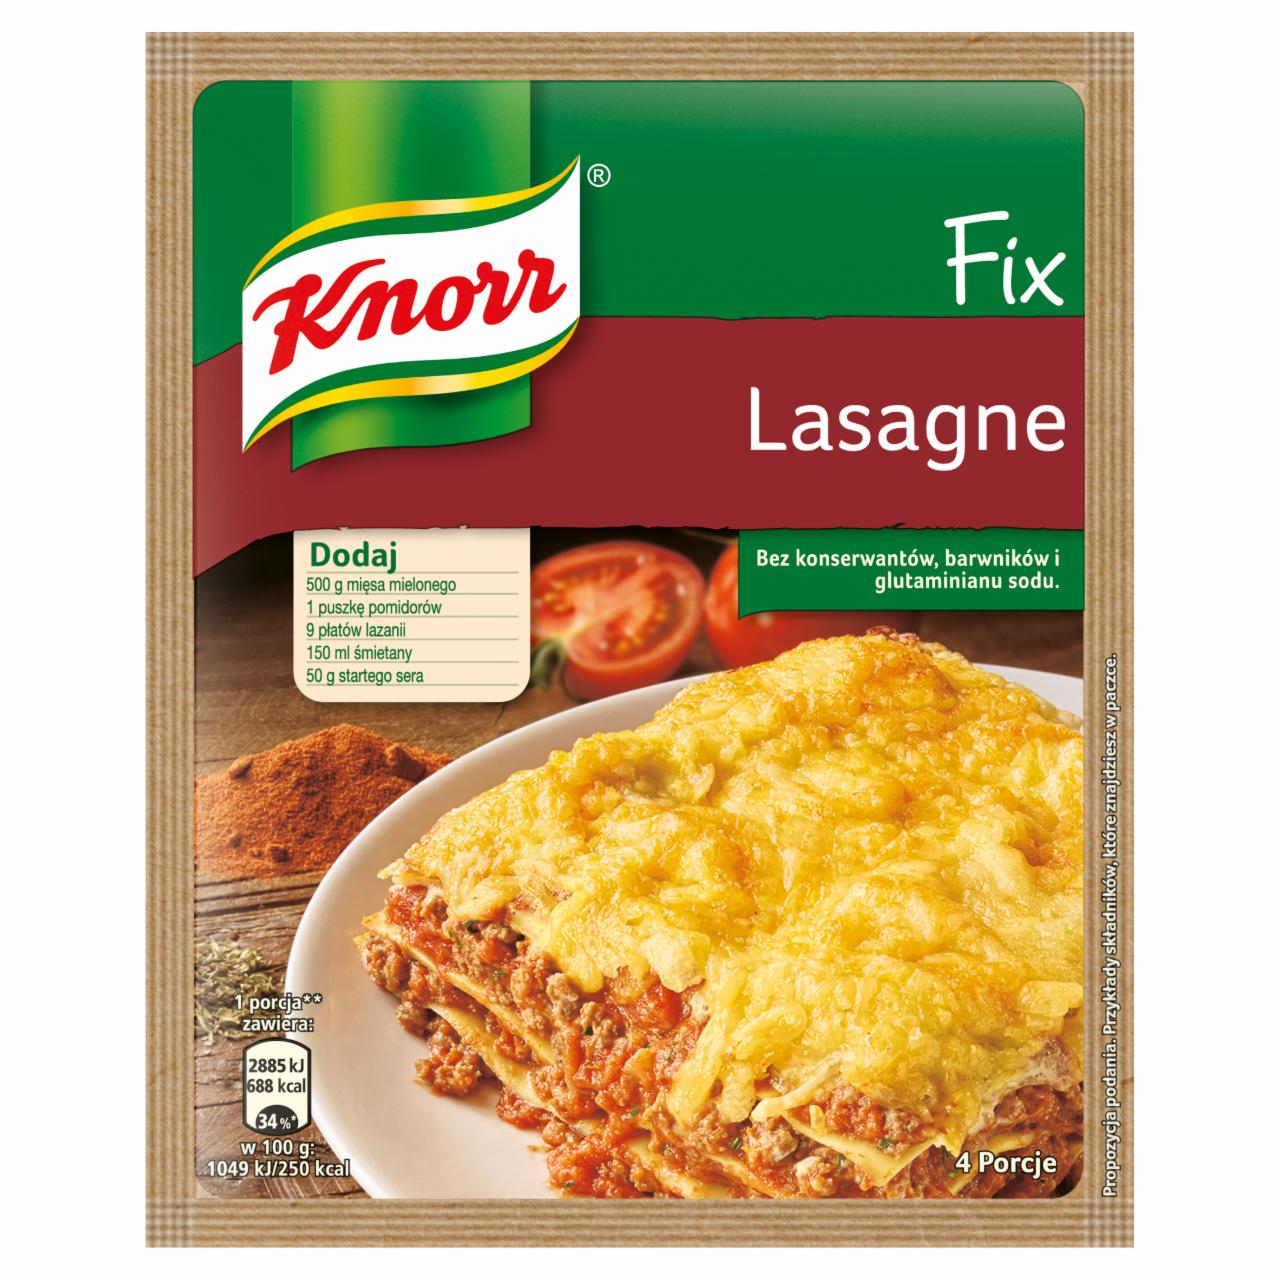 Zdjęcia - Knorr Fix Lasagne 56 g